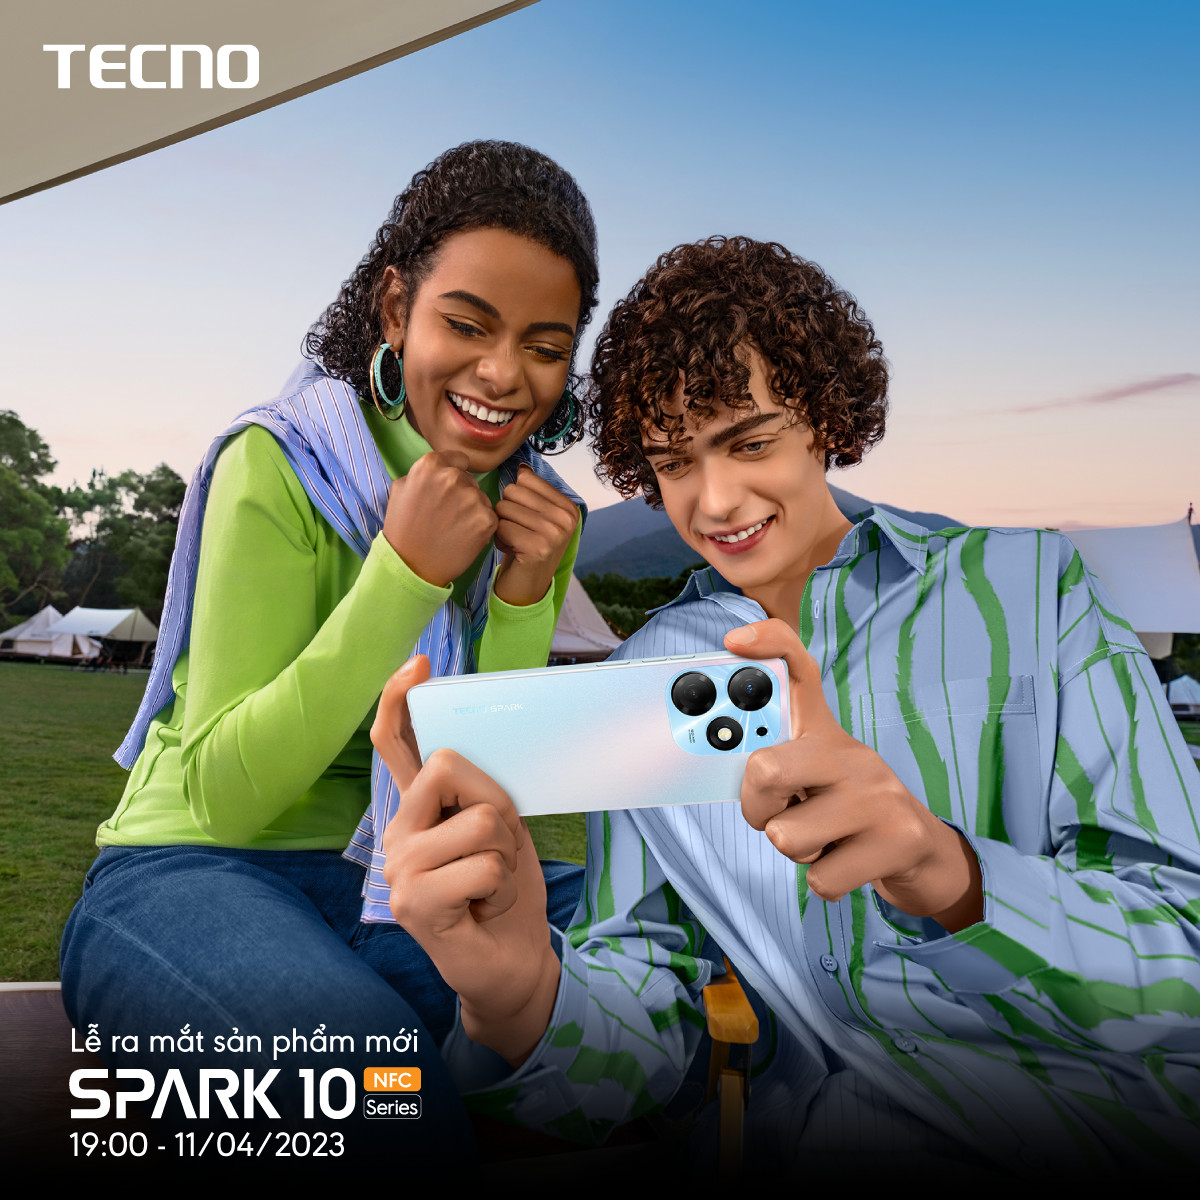 TECNO nhắm đến thị trường giới trẻ Việt với dòng Spark 10 Series ra mắt 19h ngày 11/04 - Ảnh 2.